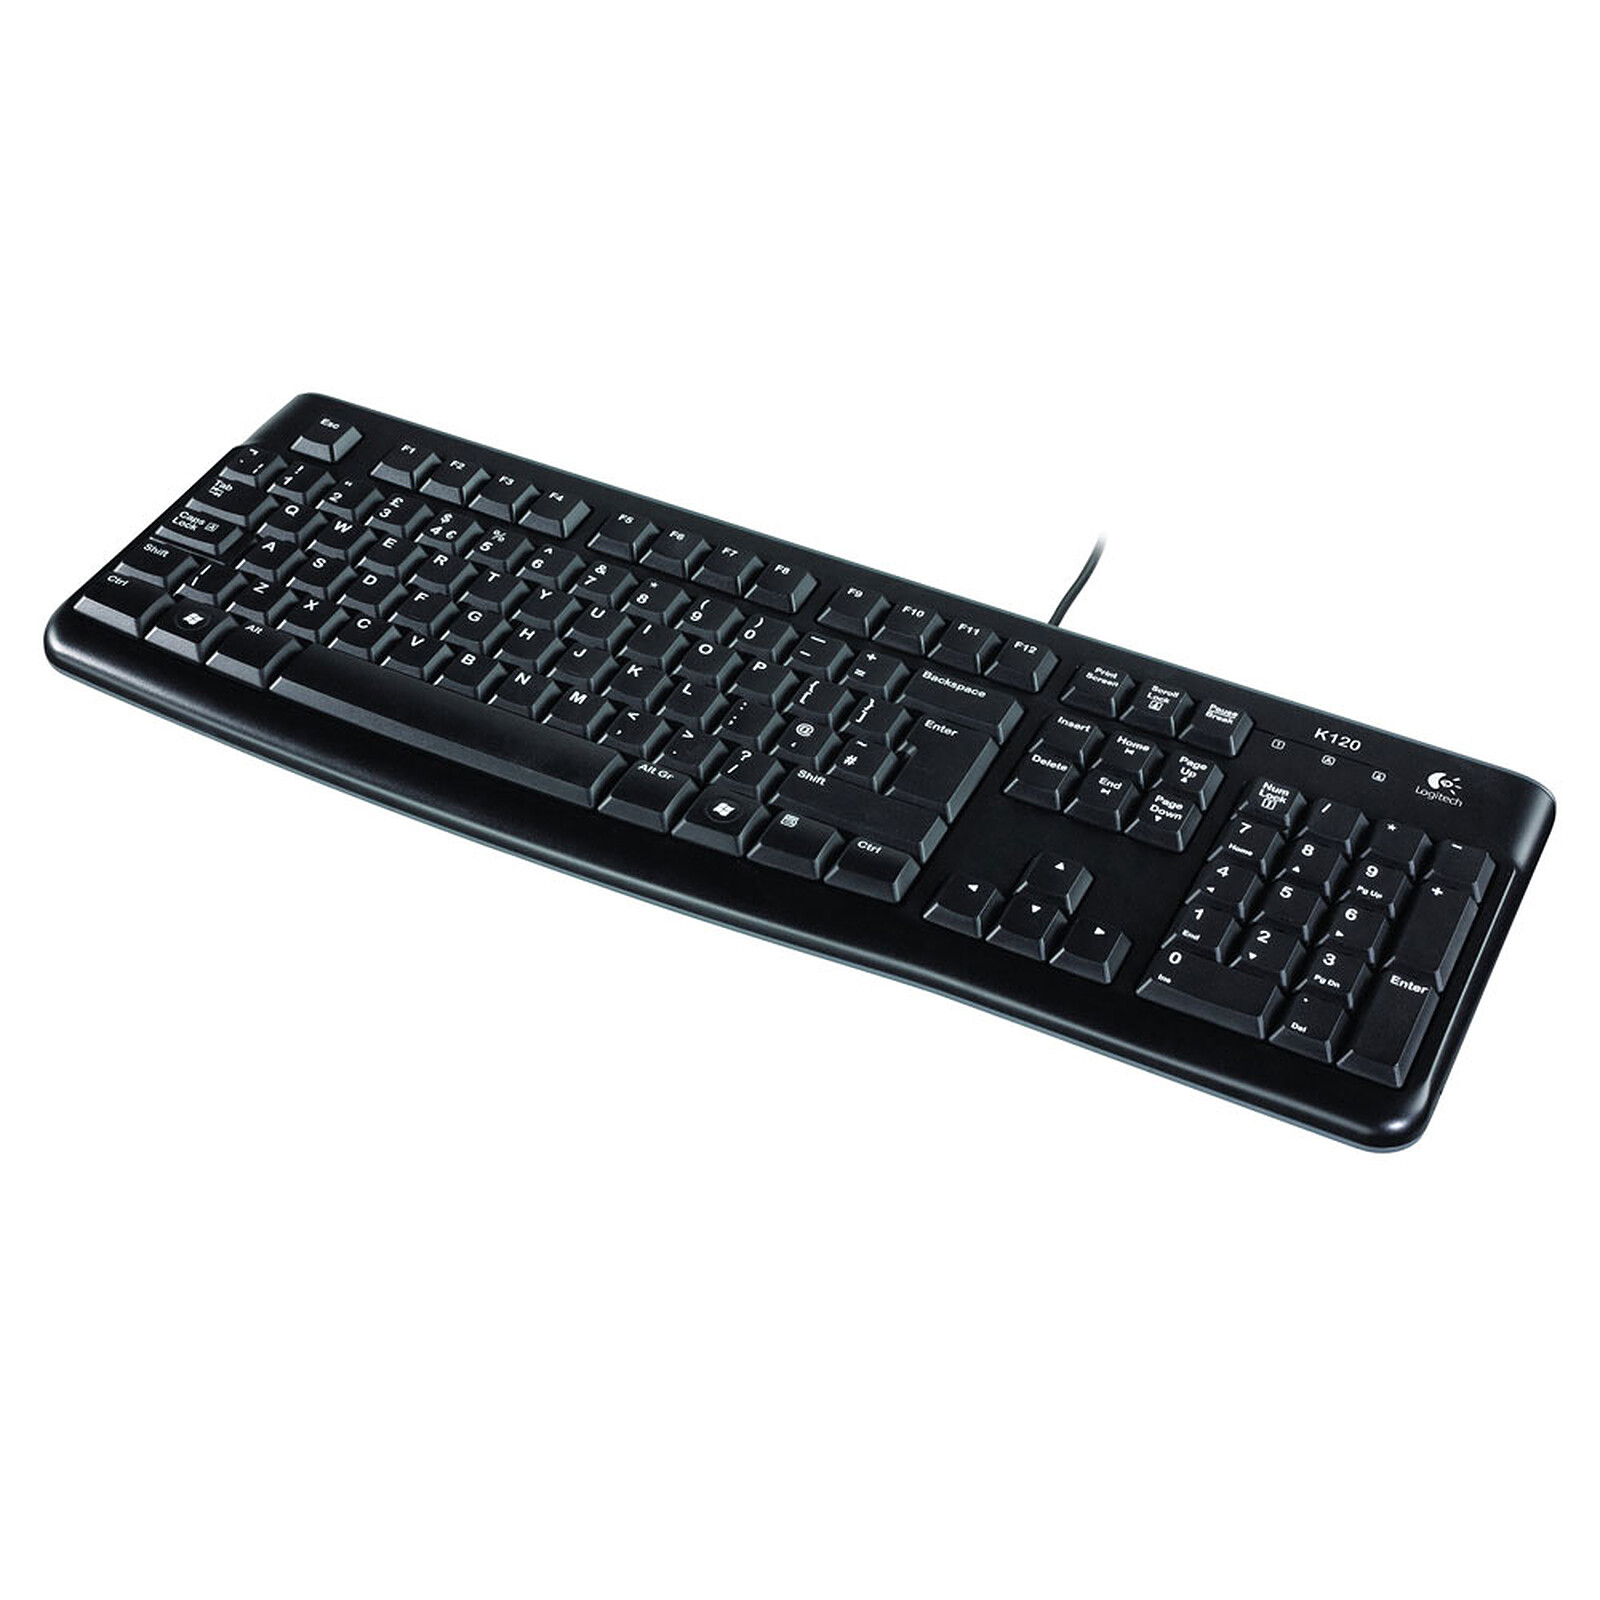 Logitech Keyboard K120 Keyboard - warranty Business 3-year - for LDLC